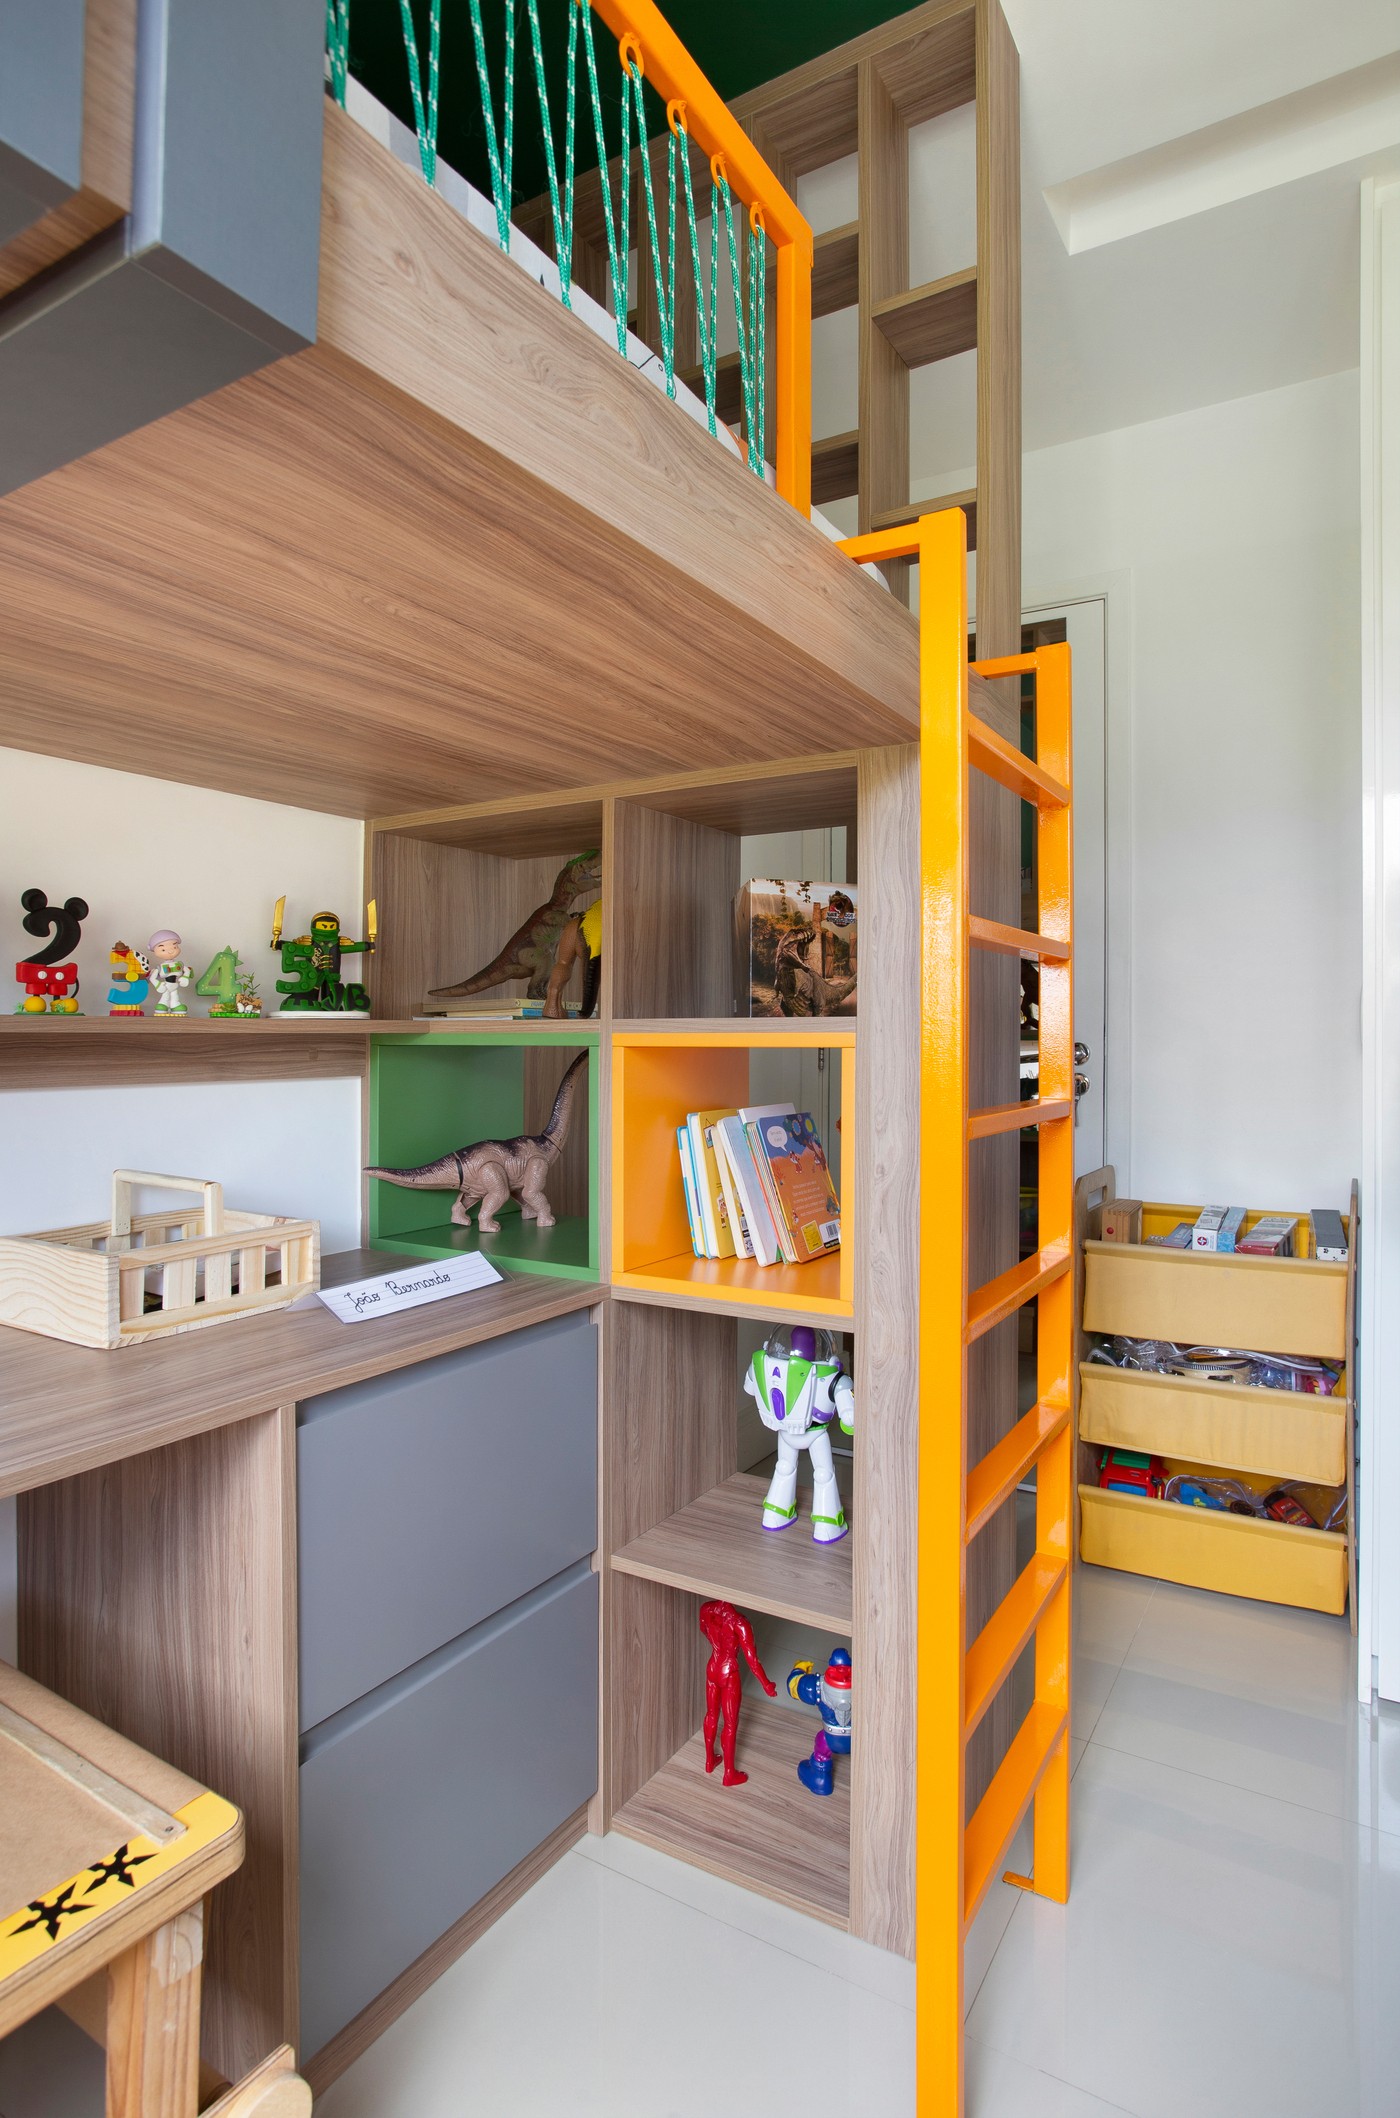 Décor do dia: quarto infantil pequeno tem boas soluções de aproveitamento de espaço (Foto: Raiana Medina)